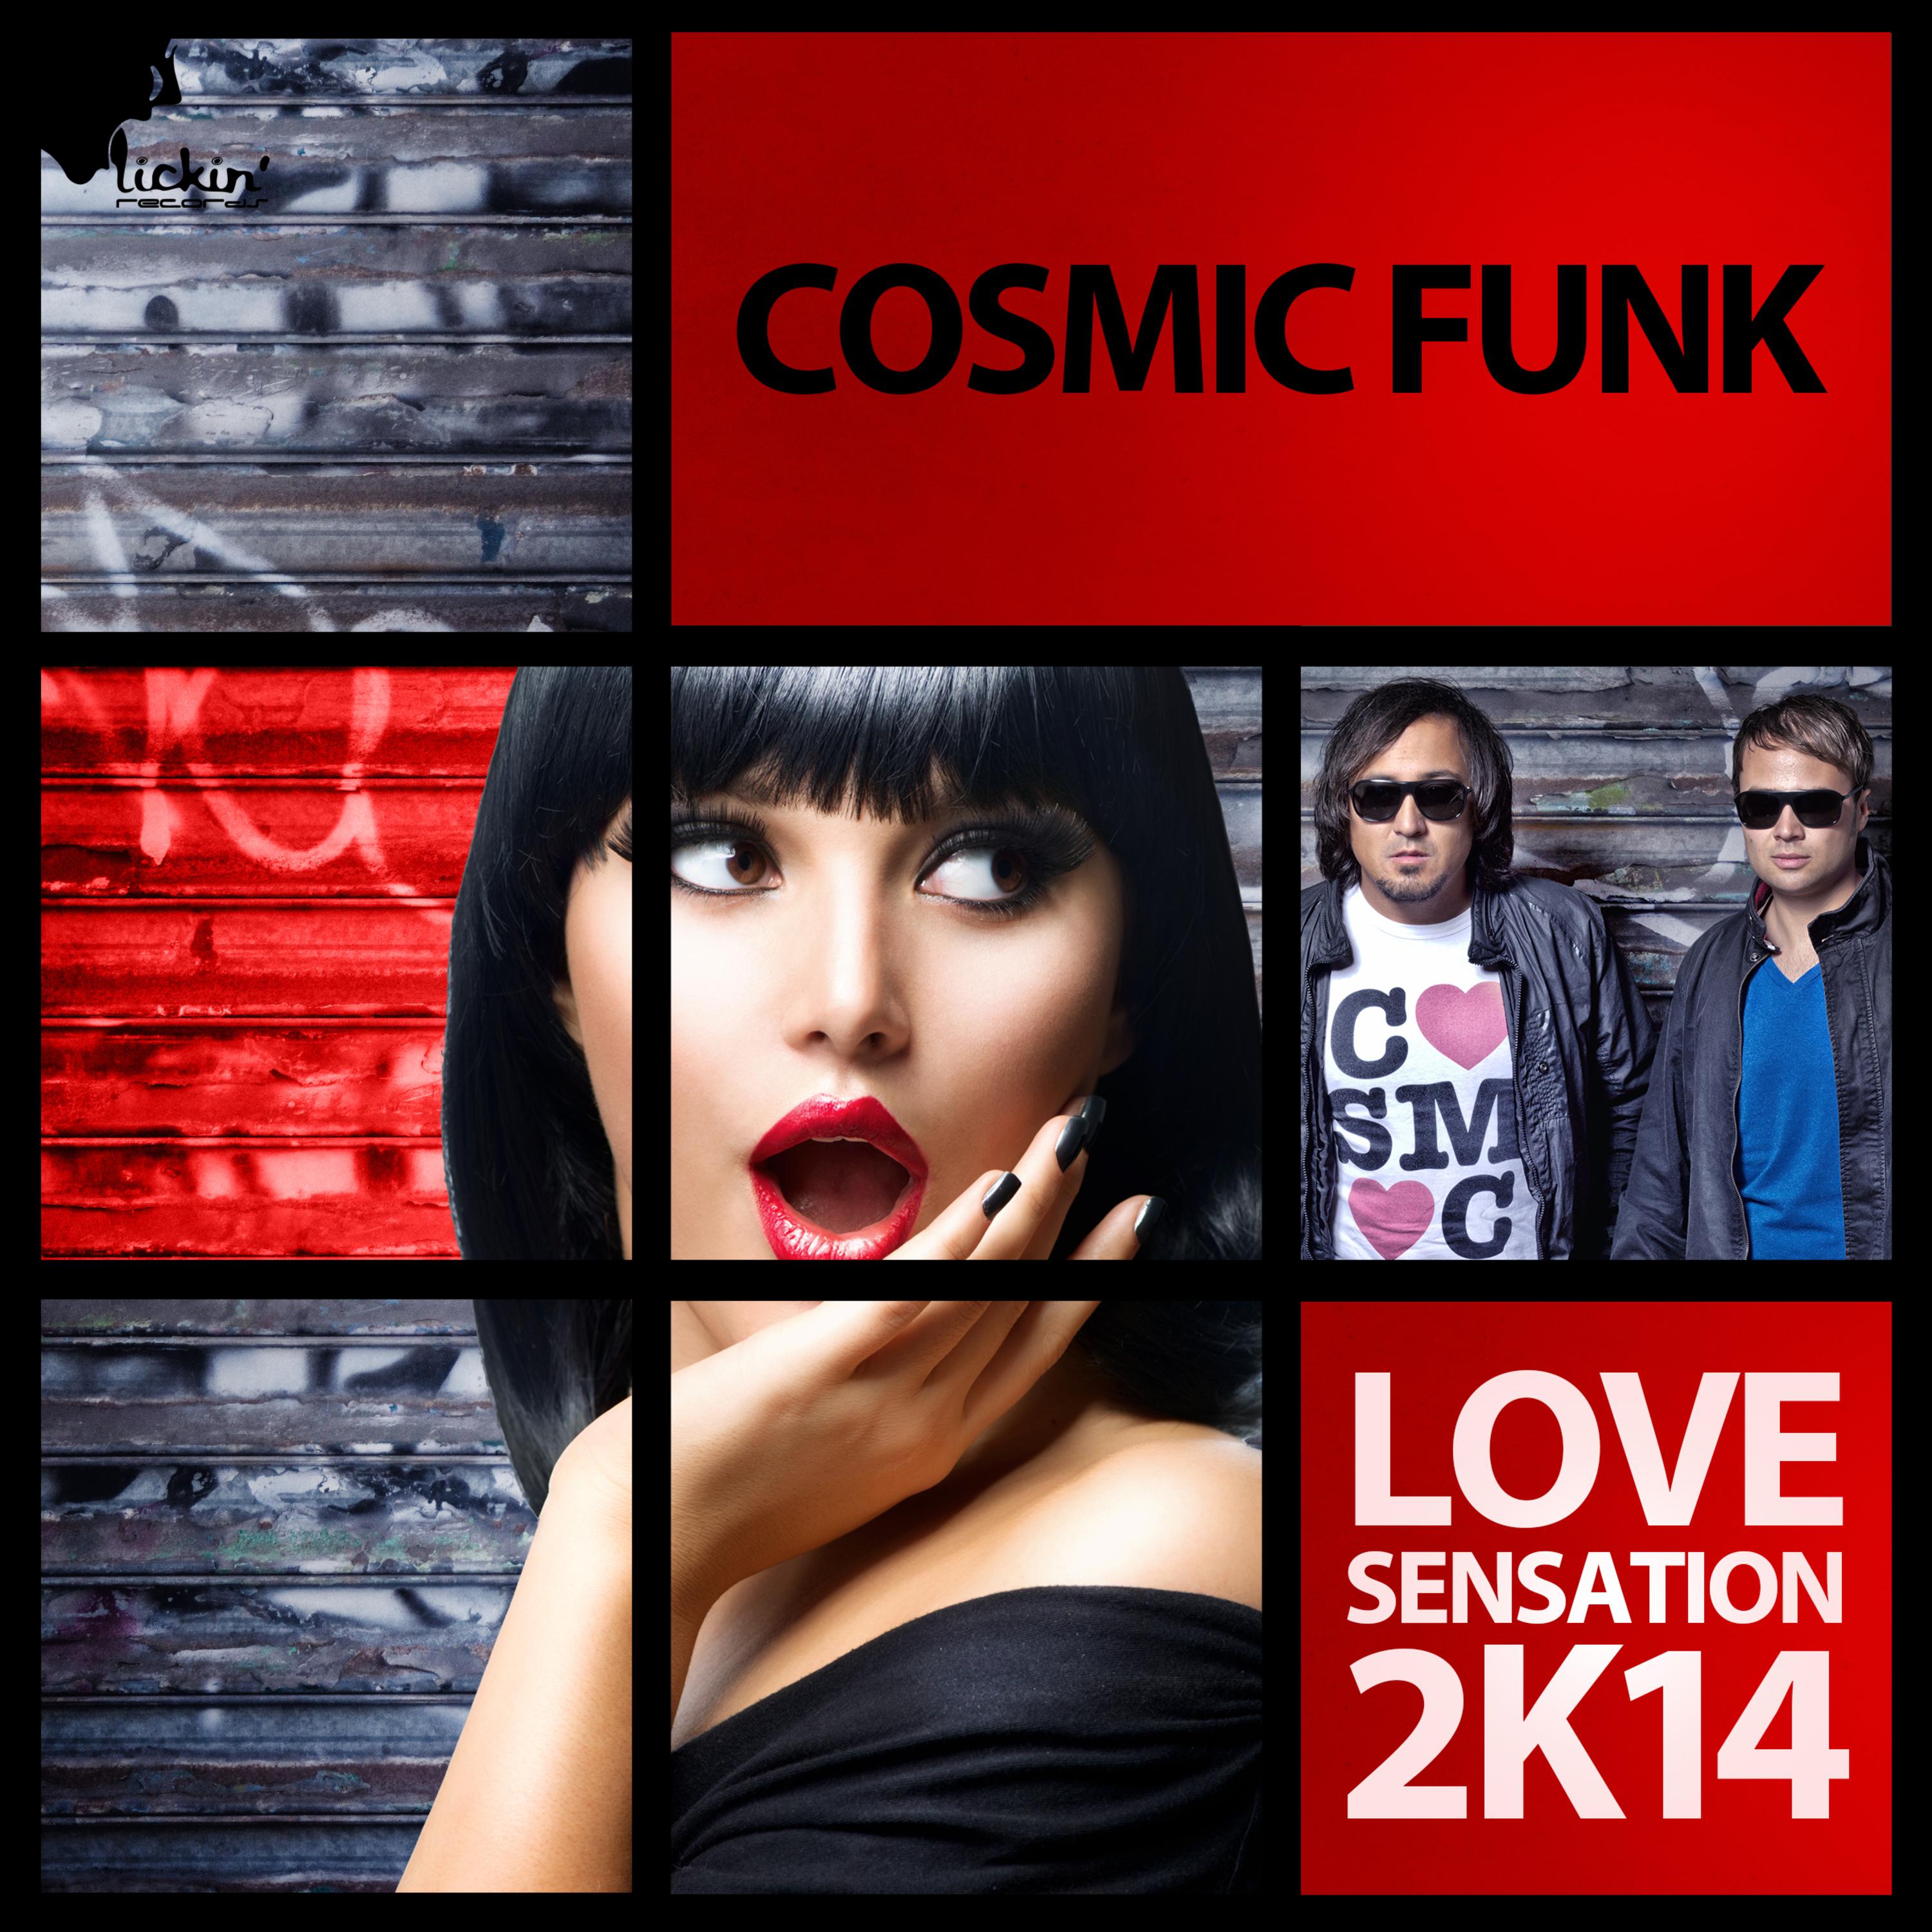 Love Sensation 2k14 (DJ Sign Remix)